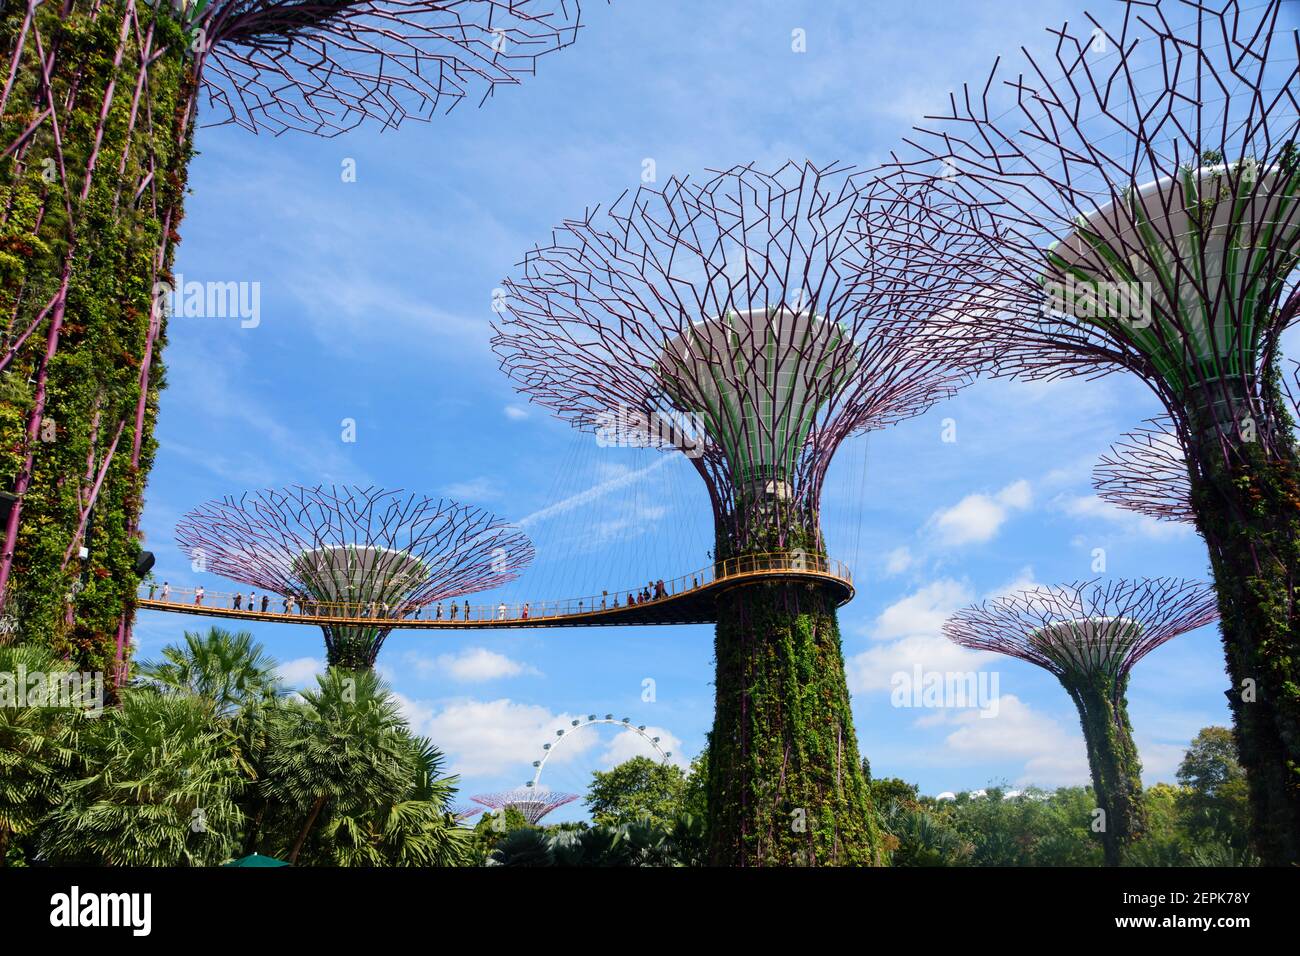 Le Super Tree Grove dans les jardins de la baie de Singapour. Banque D'Images